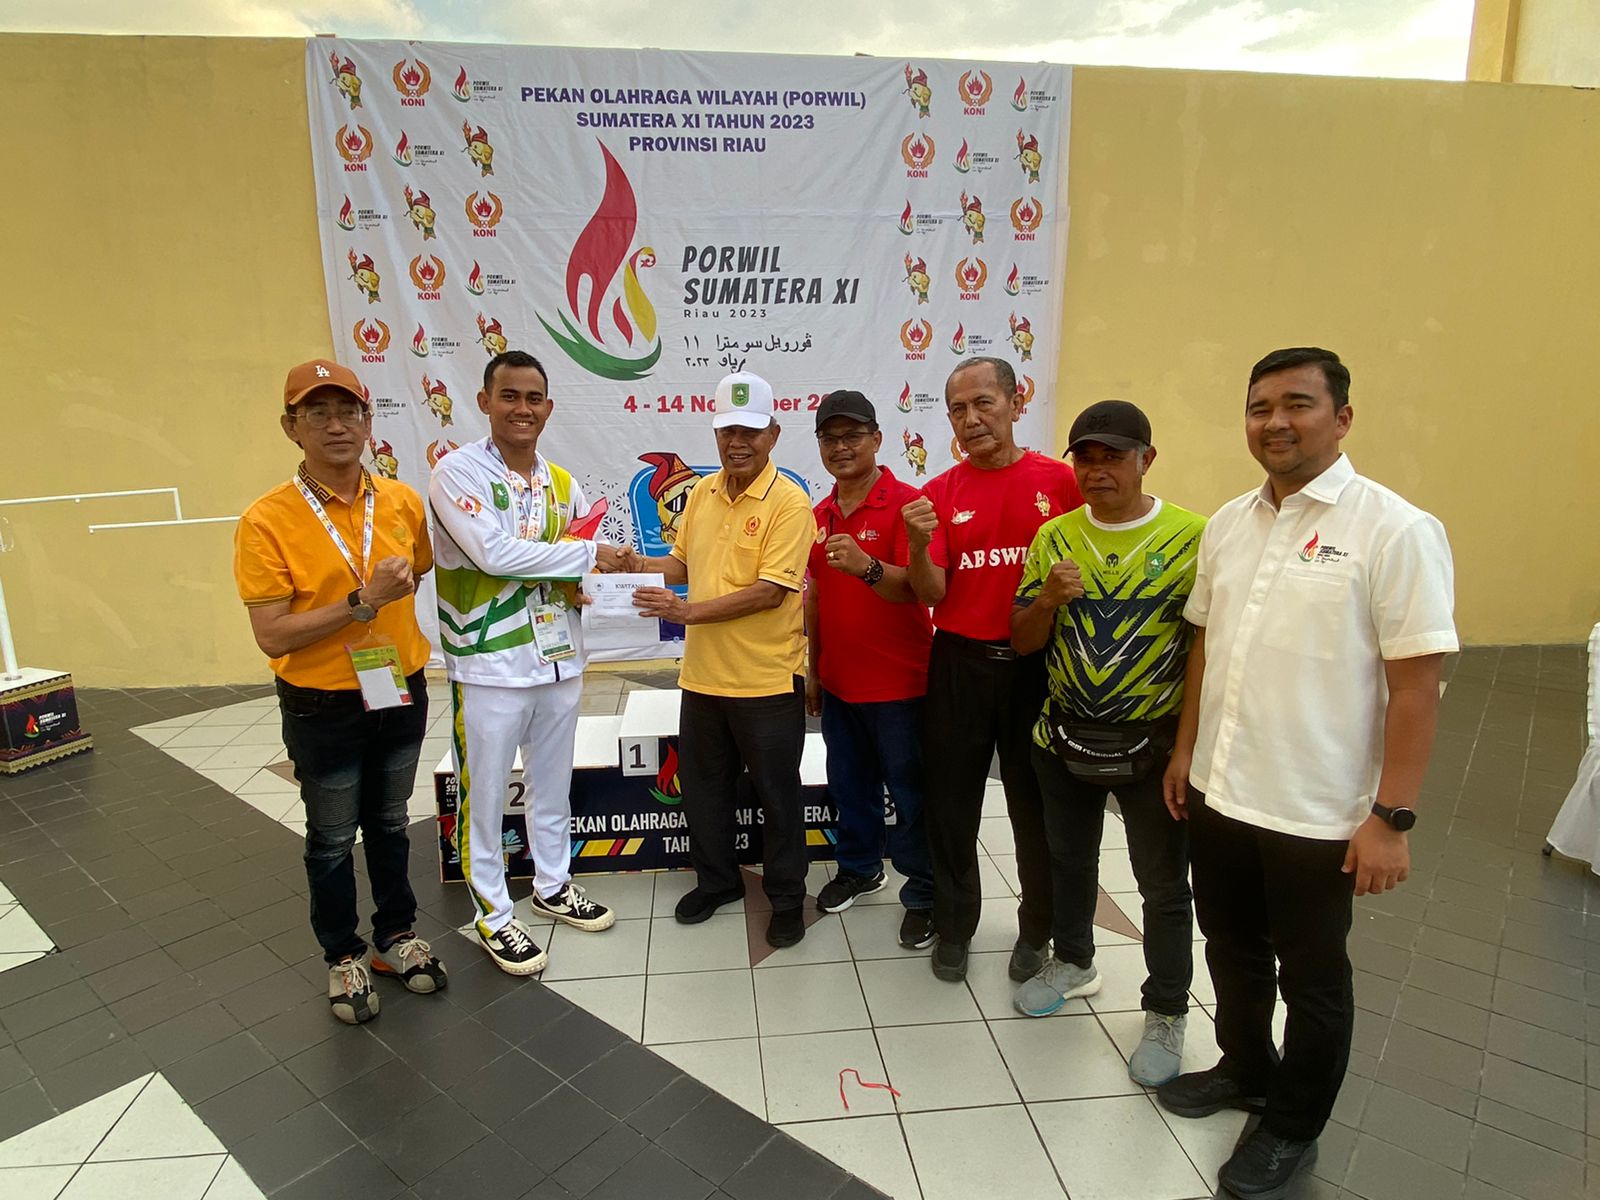 Iskandar Hoesin Optimis Juara Umum Porwil, Renang Jadi Lumbung Emas Riau